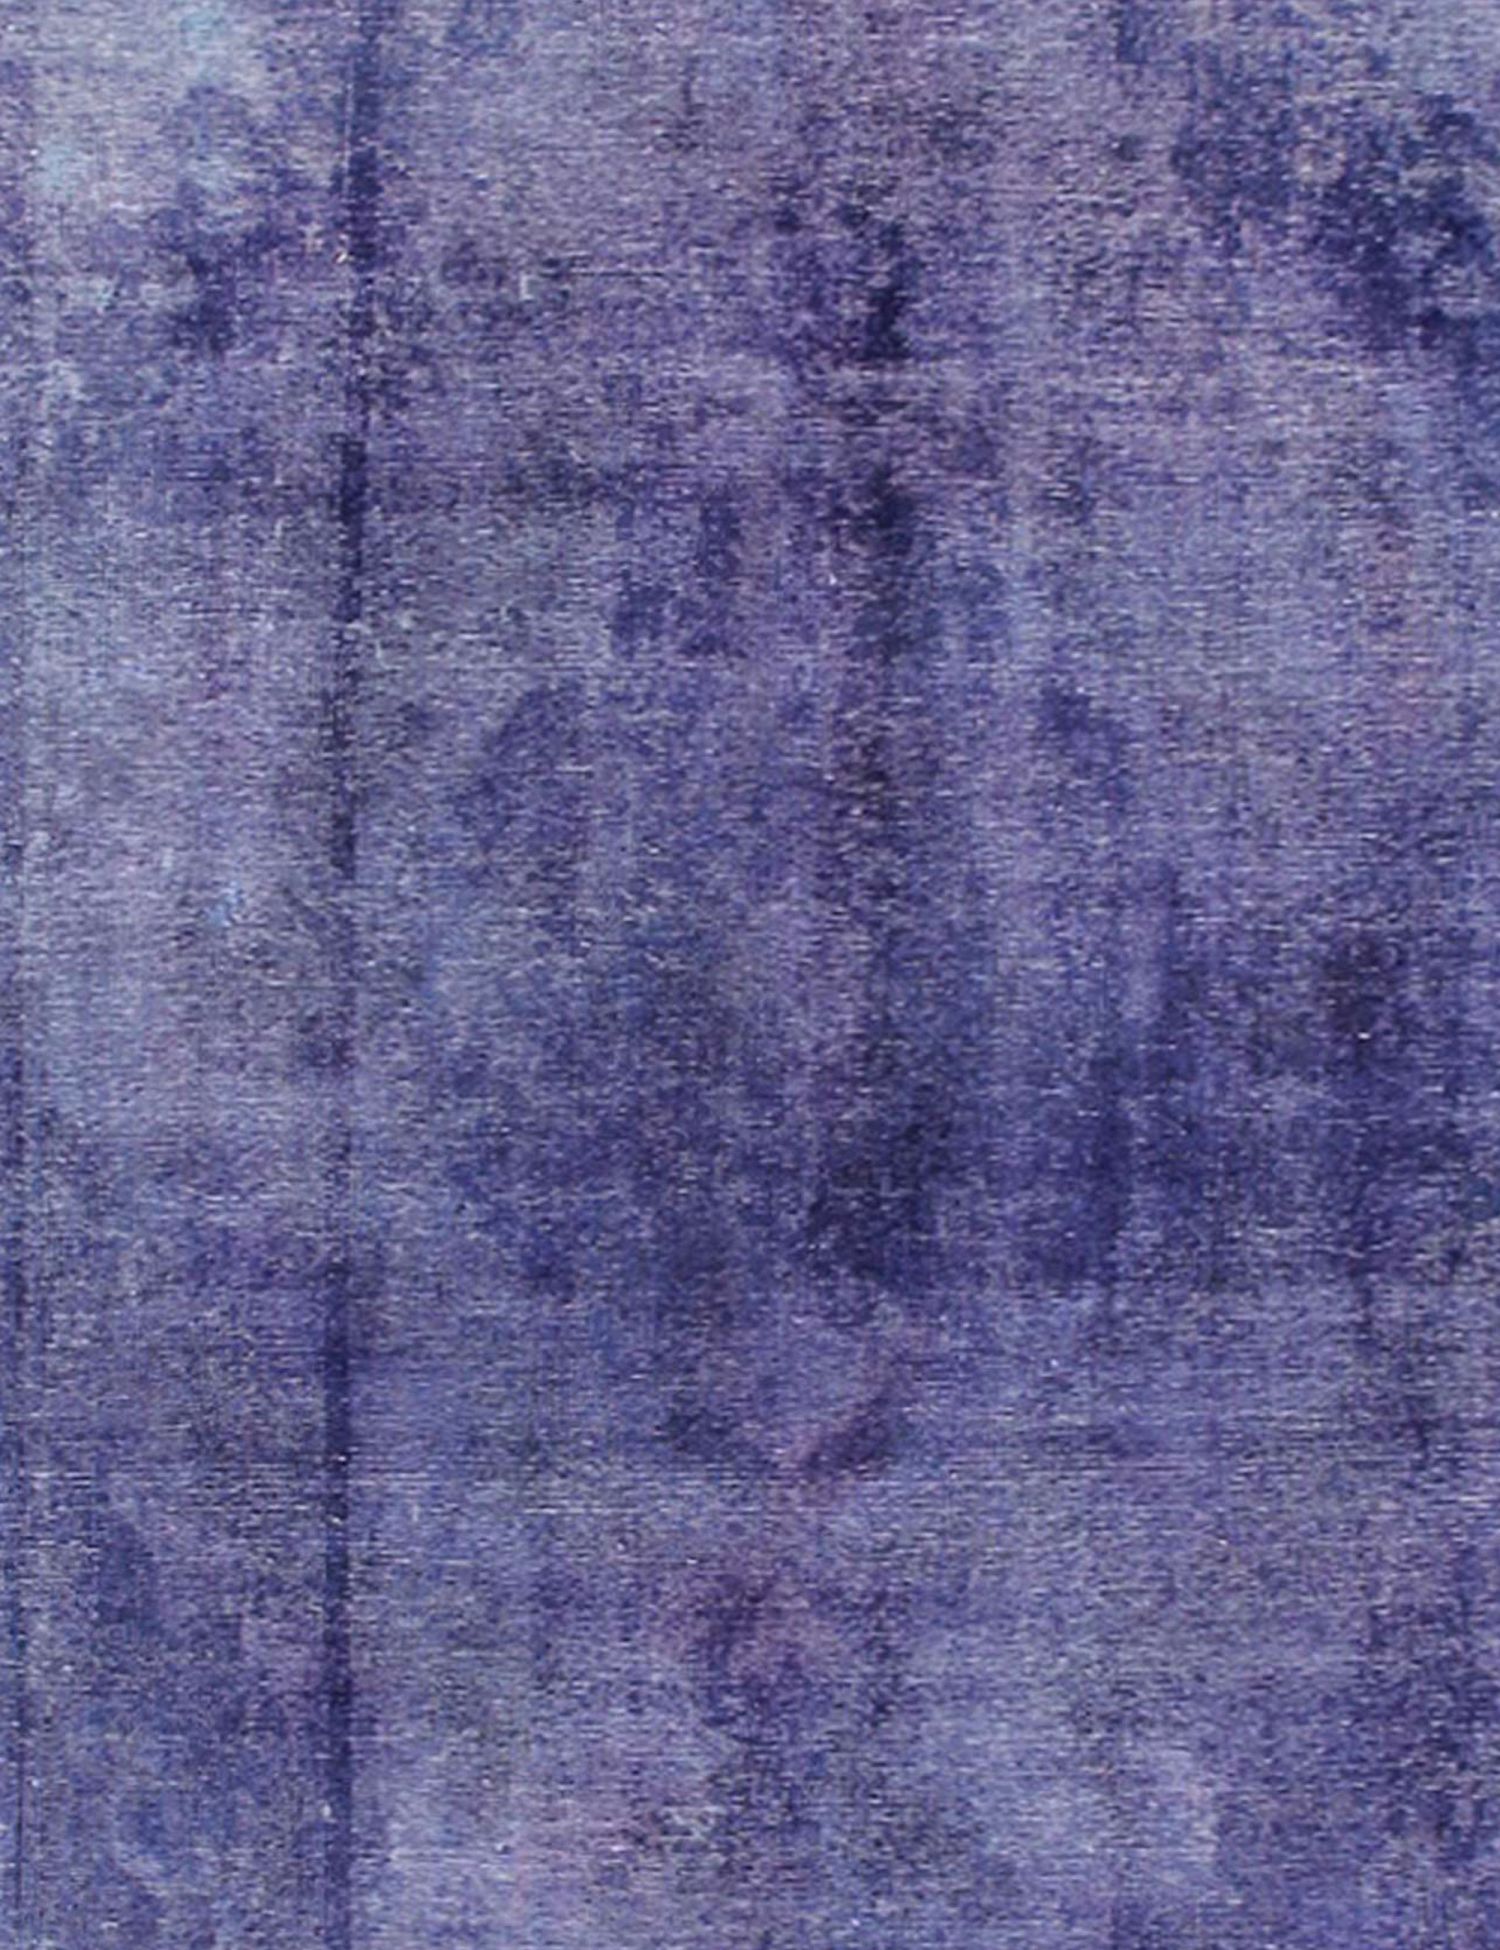 Persischer Vintage Teppich  blau <br/>195 x 195 cm